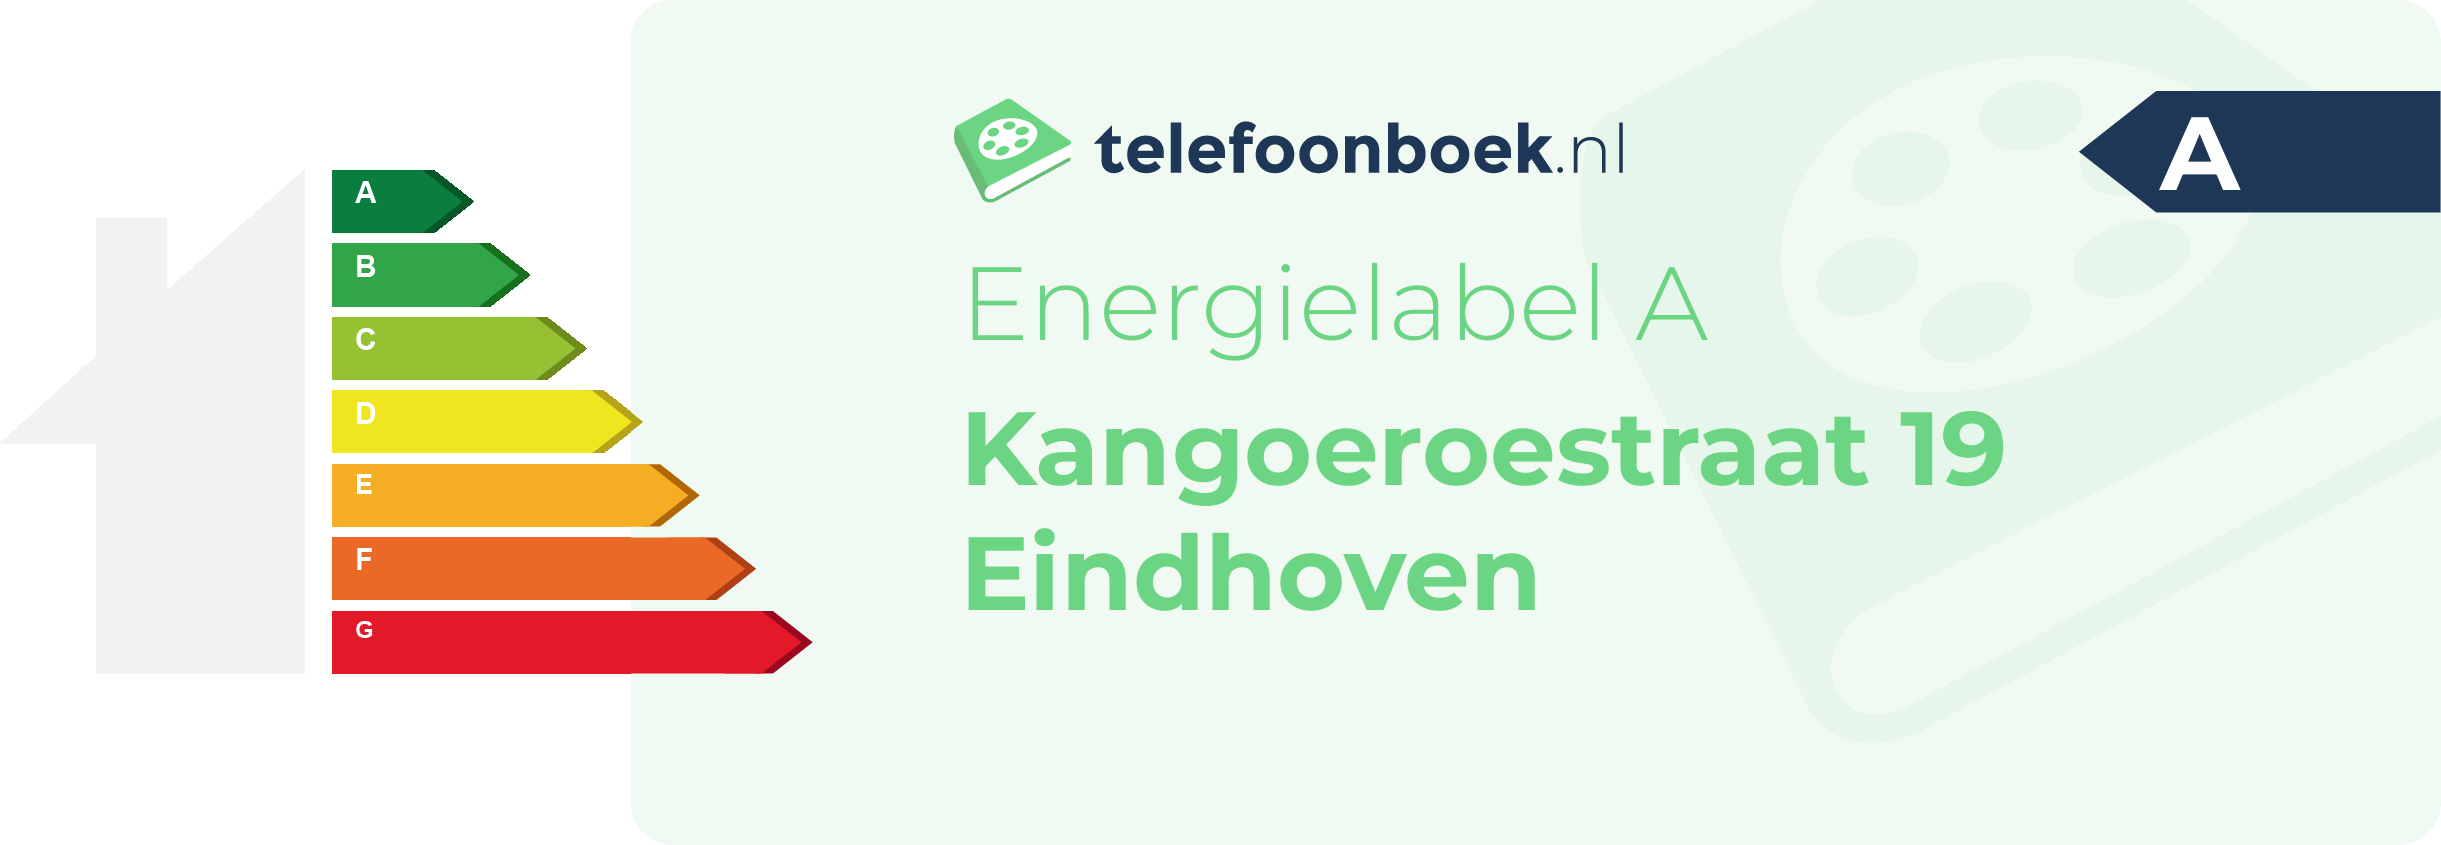 Energielabel Kangoeroestraat 19 Eindhoven